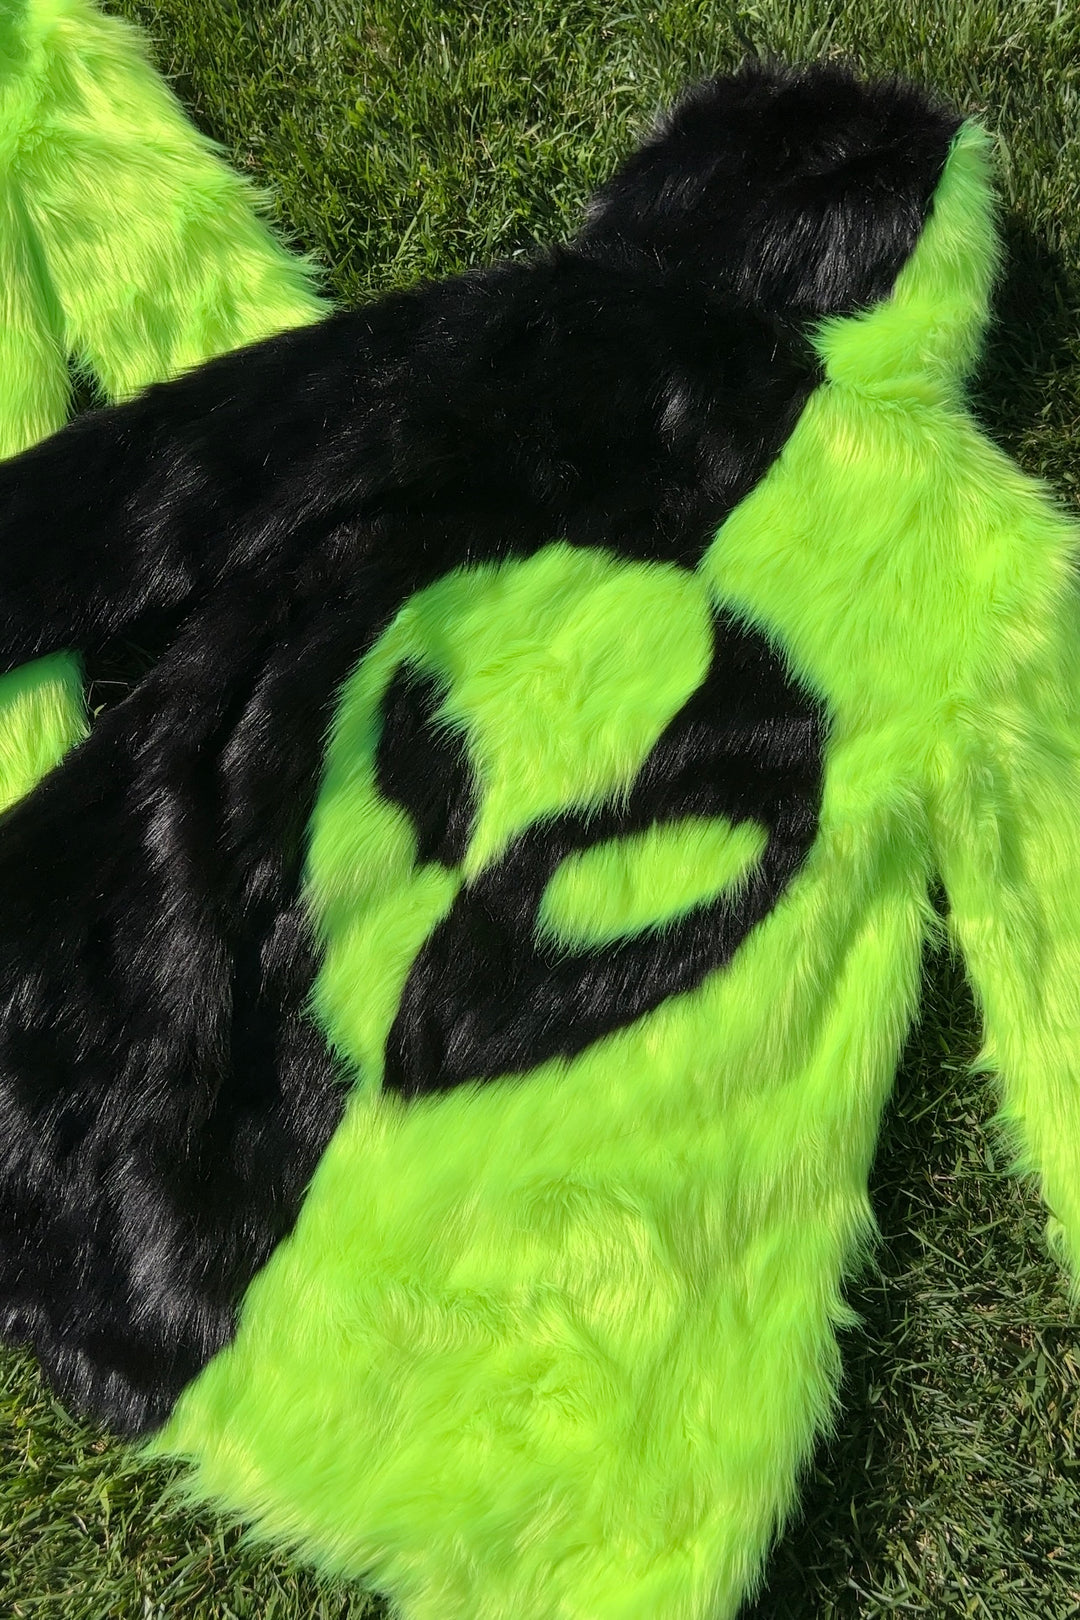 Area 51 Neon Green/Black Fur Coat - Medium